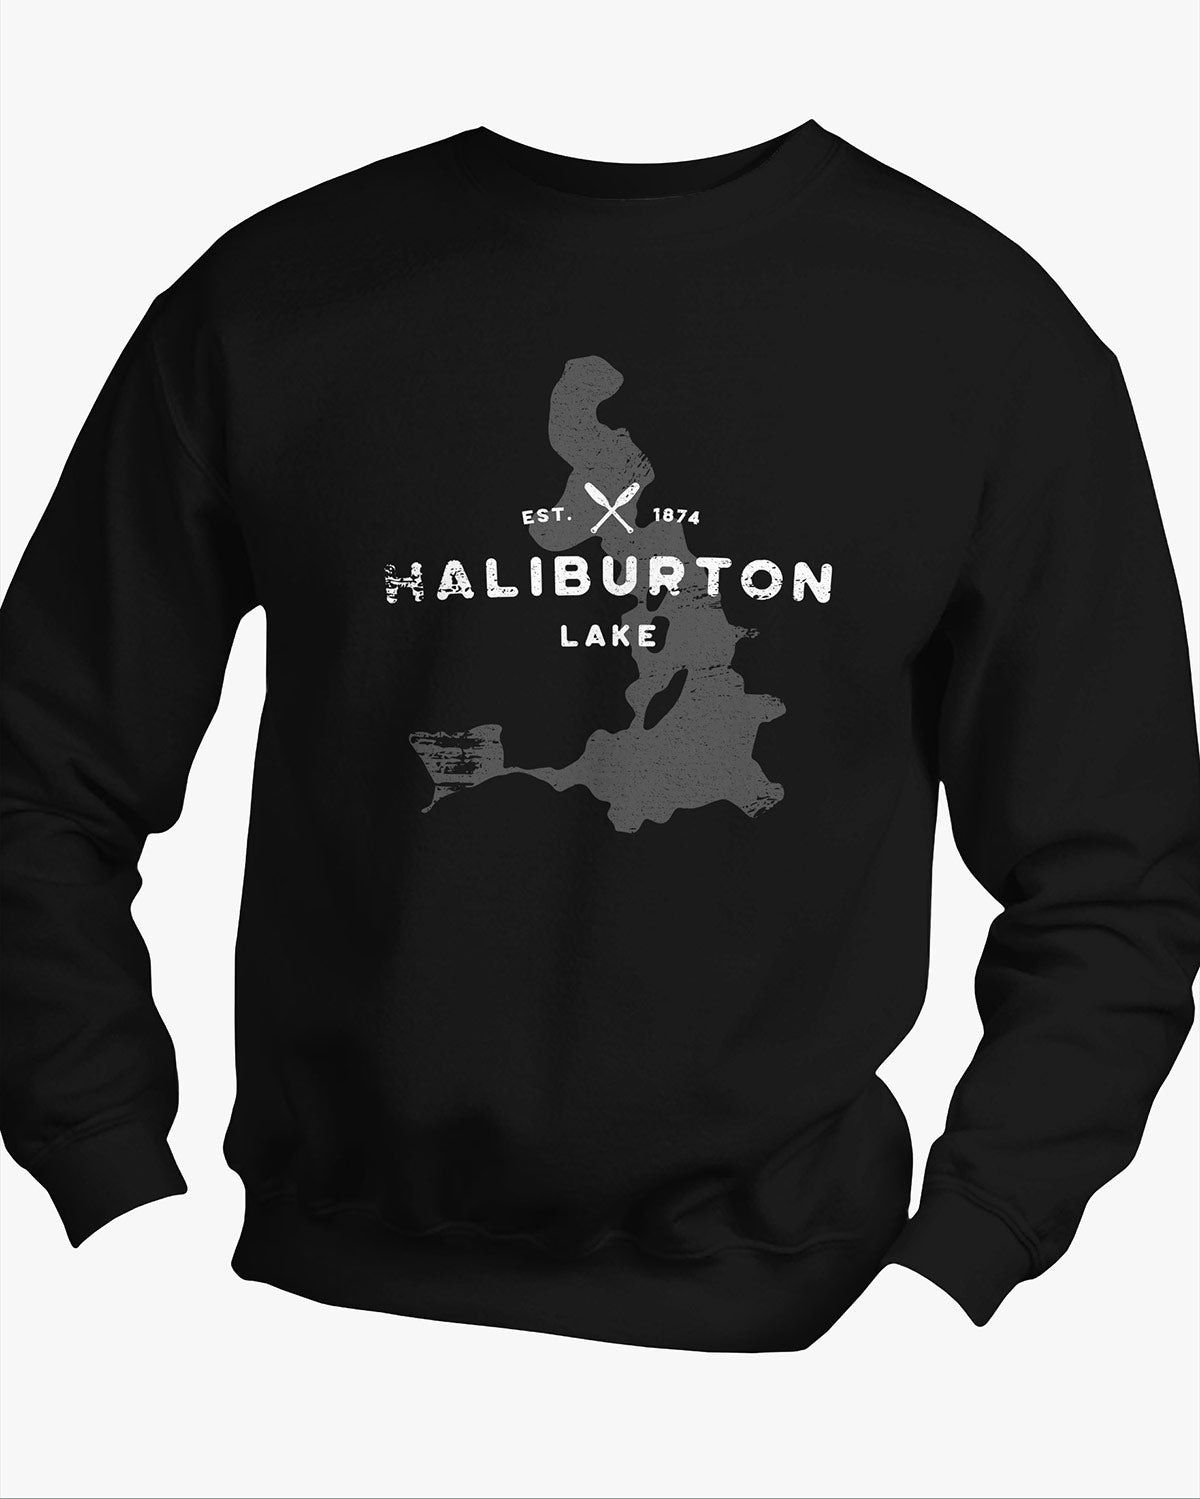 Lake Series - Haliburton Lake - Sweater